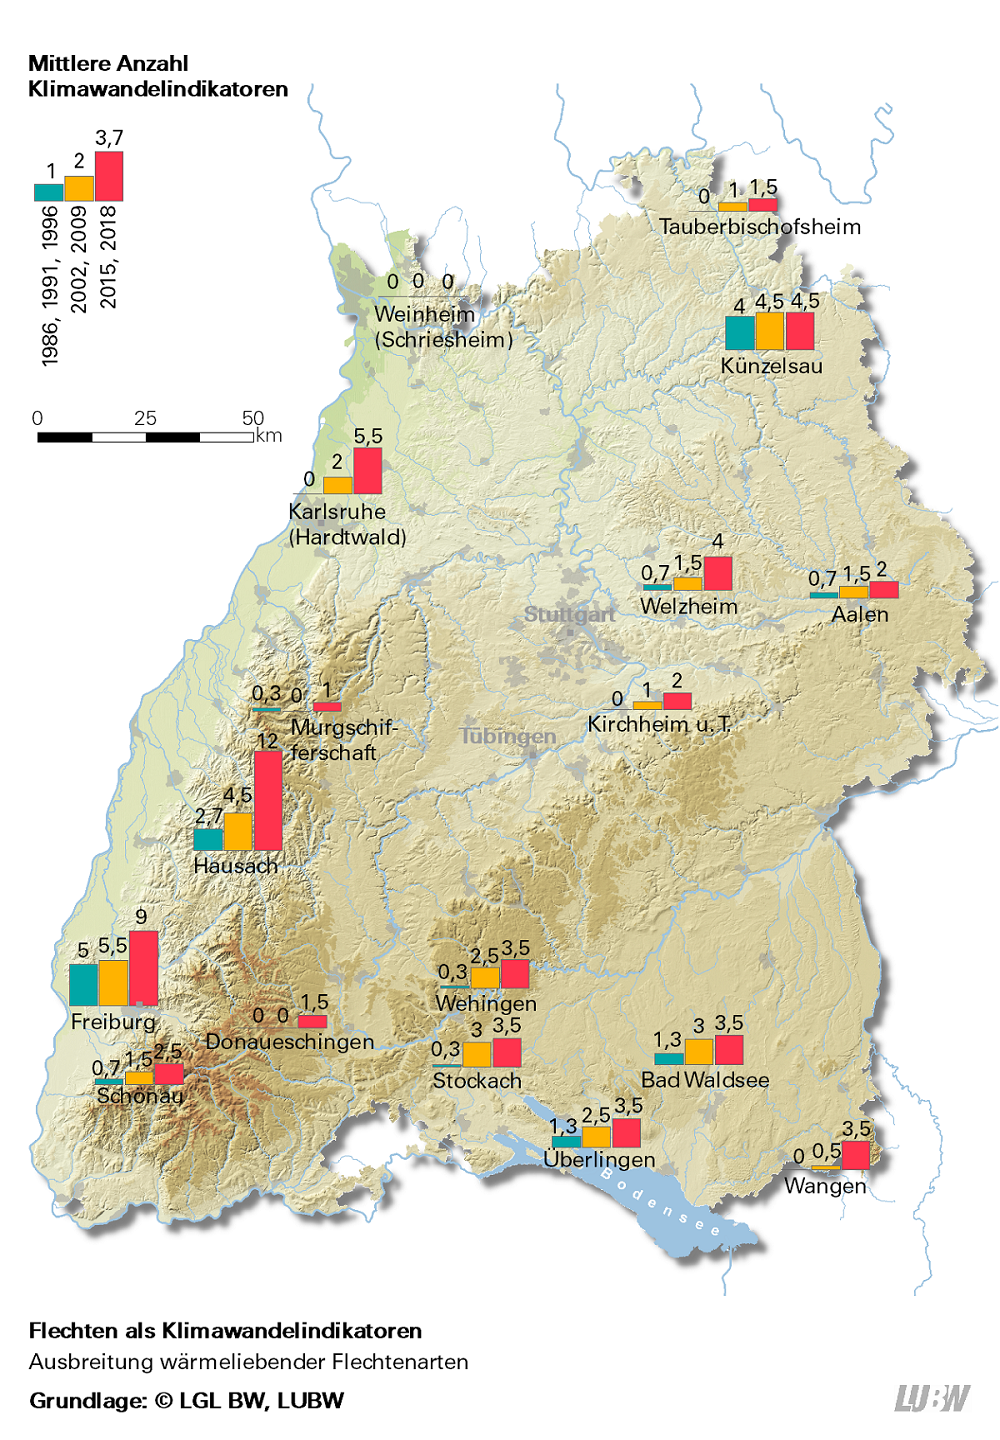  Anhand einer Karte Baden-Württembergs wird die mittlere Anzahl der 45 Flechtenarten, die als Klimawandelindikatoren gelten, räumlich am Ort ihrer Kartierung dargestellt. Die Daten jeden Standortes werden dabei zeitlich differenziert mittels drei Säulen dargestellt. Der erste Zeitraum umfasst die daten von 1986, 1991 und 1996 (blaue Säule), der zweite Zeitraum die Jahre 2002 und 2009 (gelbe säule) und der dritte Zeitraum bündelt die Daten von 2015 und 2018 (rote Säule). Deutlich wird zum einen die Zunahme der Flechtenarten und zum anderen deren Ausbreitung von Westen und Süden nach Osten und Norden.